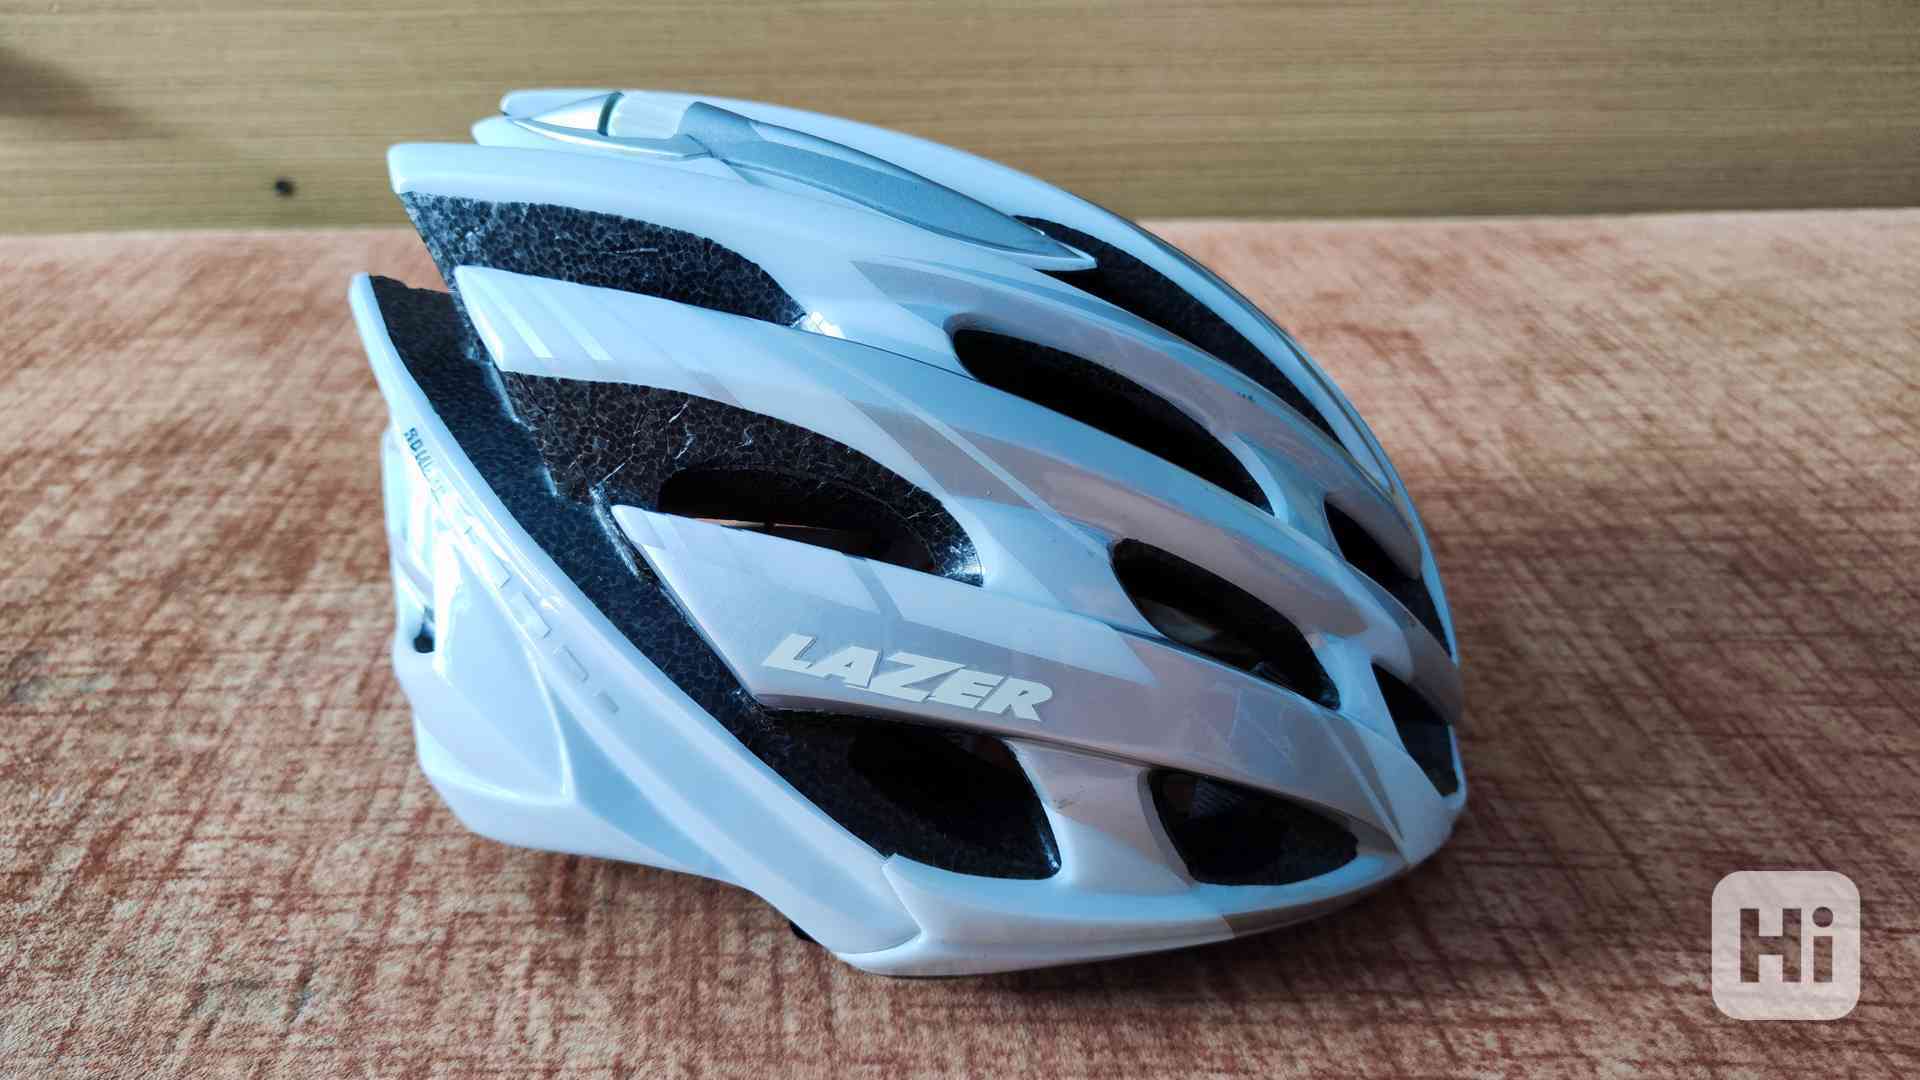  Cyklistická helma LAZER - foto 1